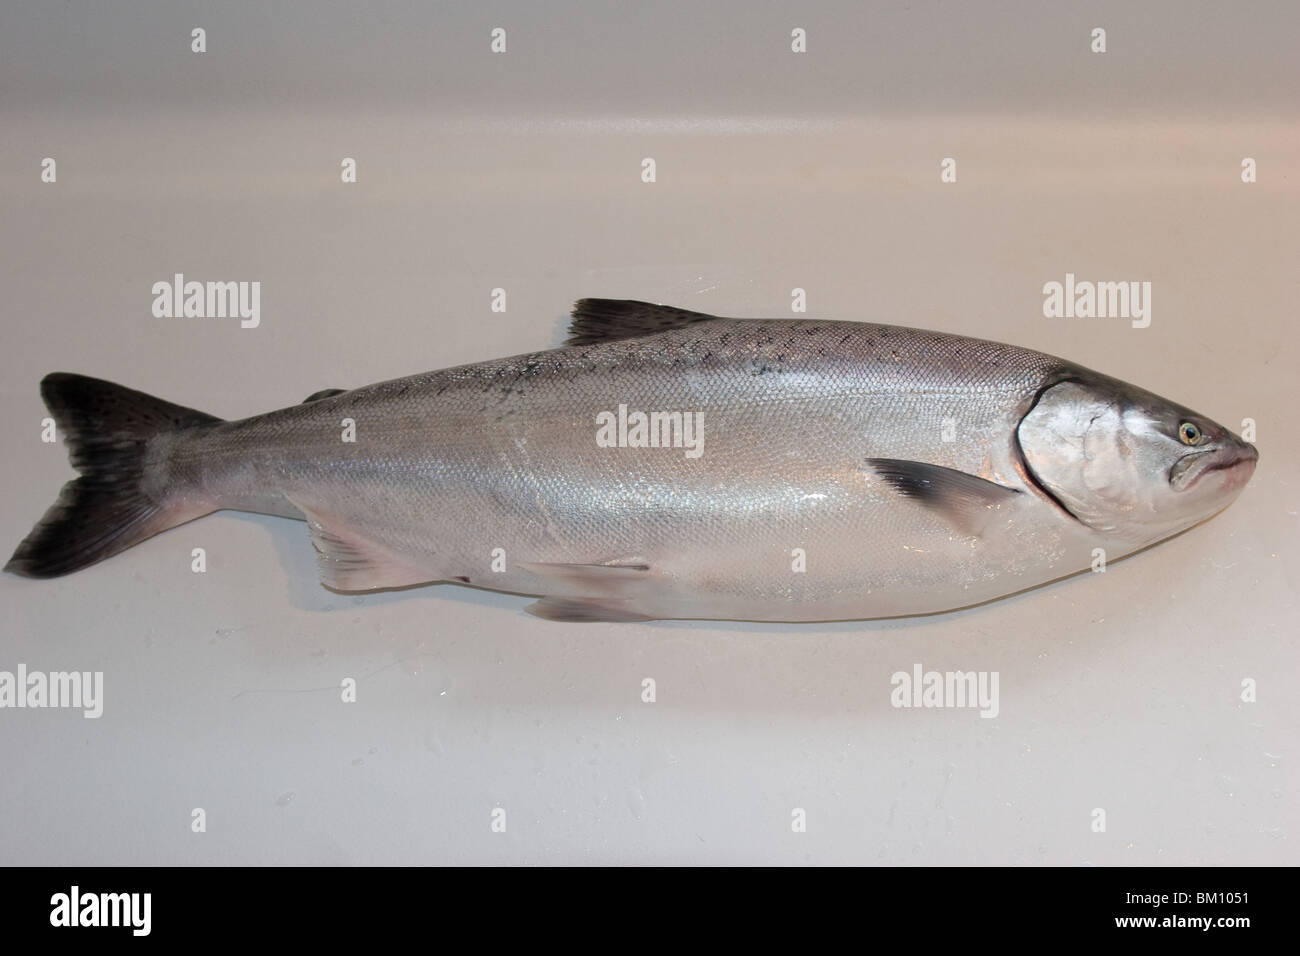 Frisch gefangen, King Salmon (Königslachs). Gefangen während Spinnfischen in meinem örtlichen Fluss. Stockfoto